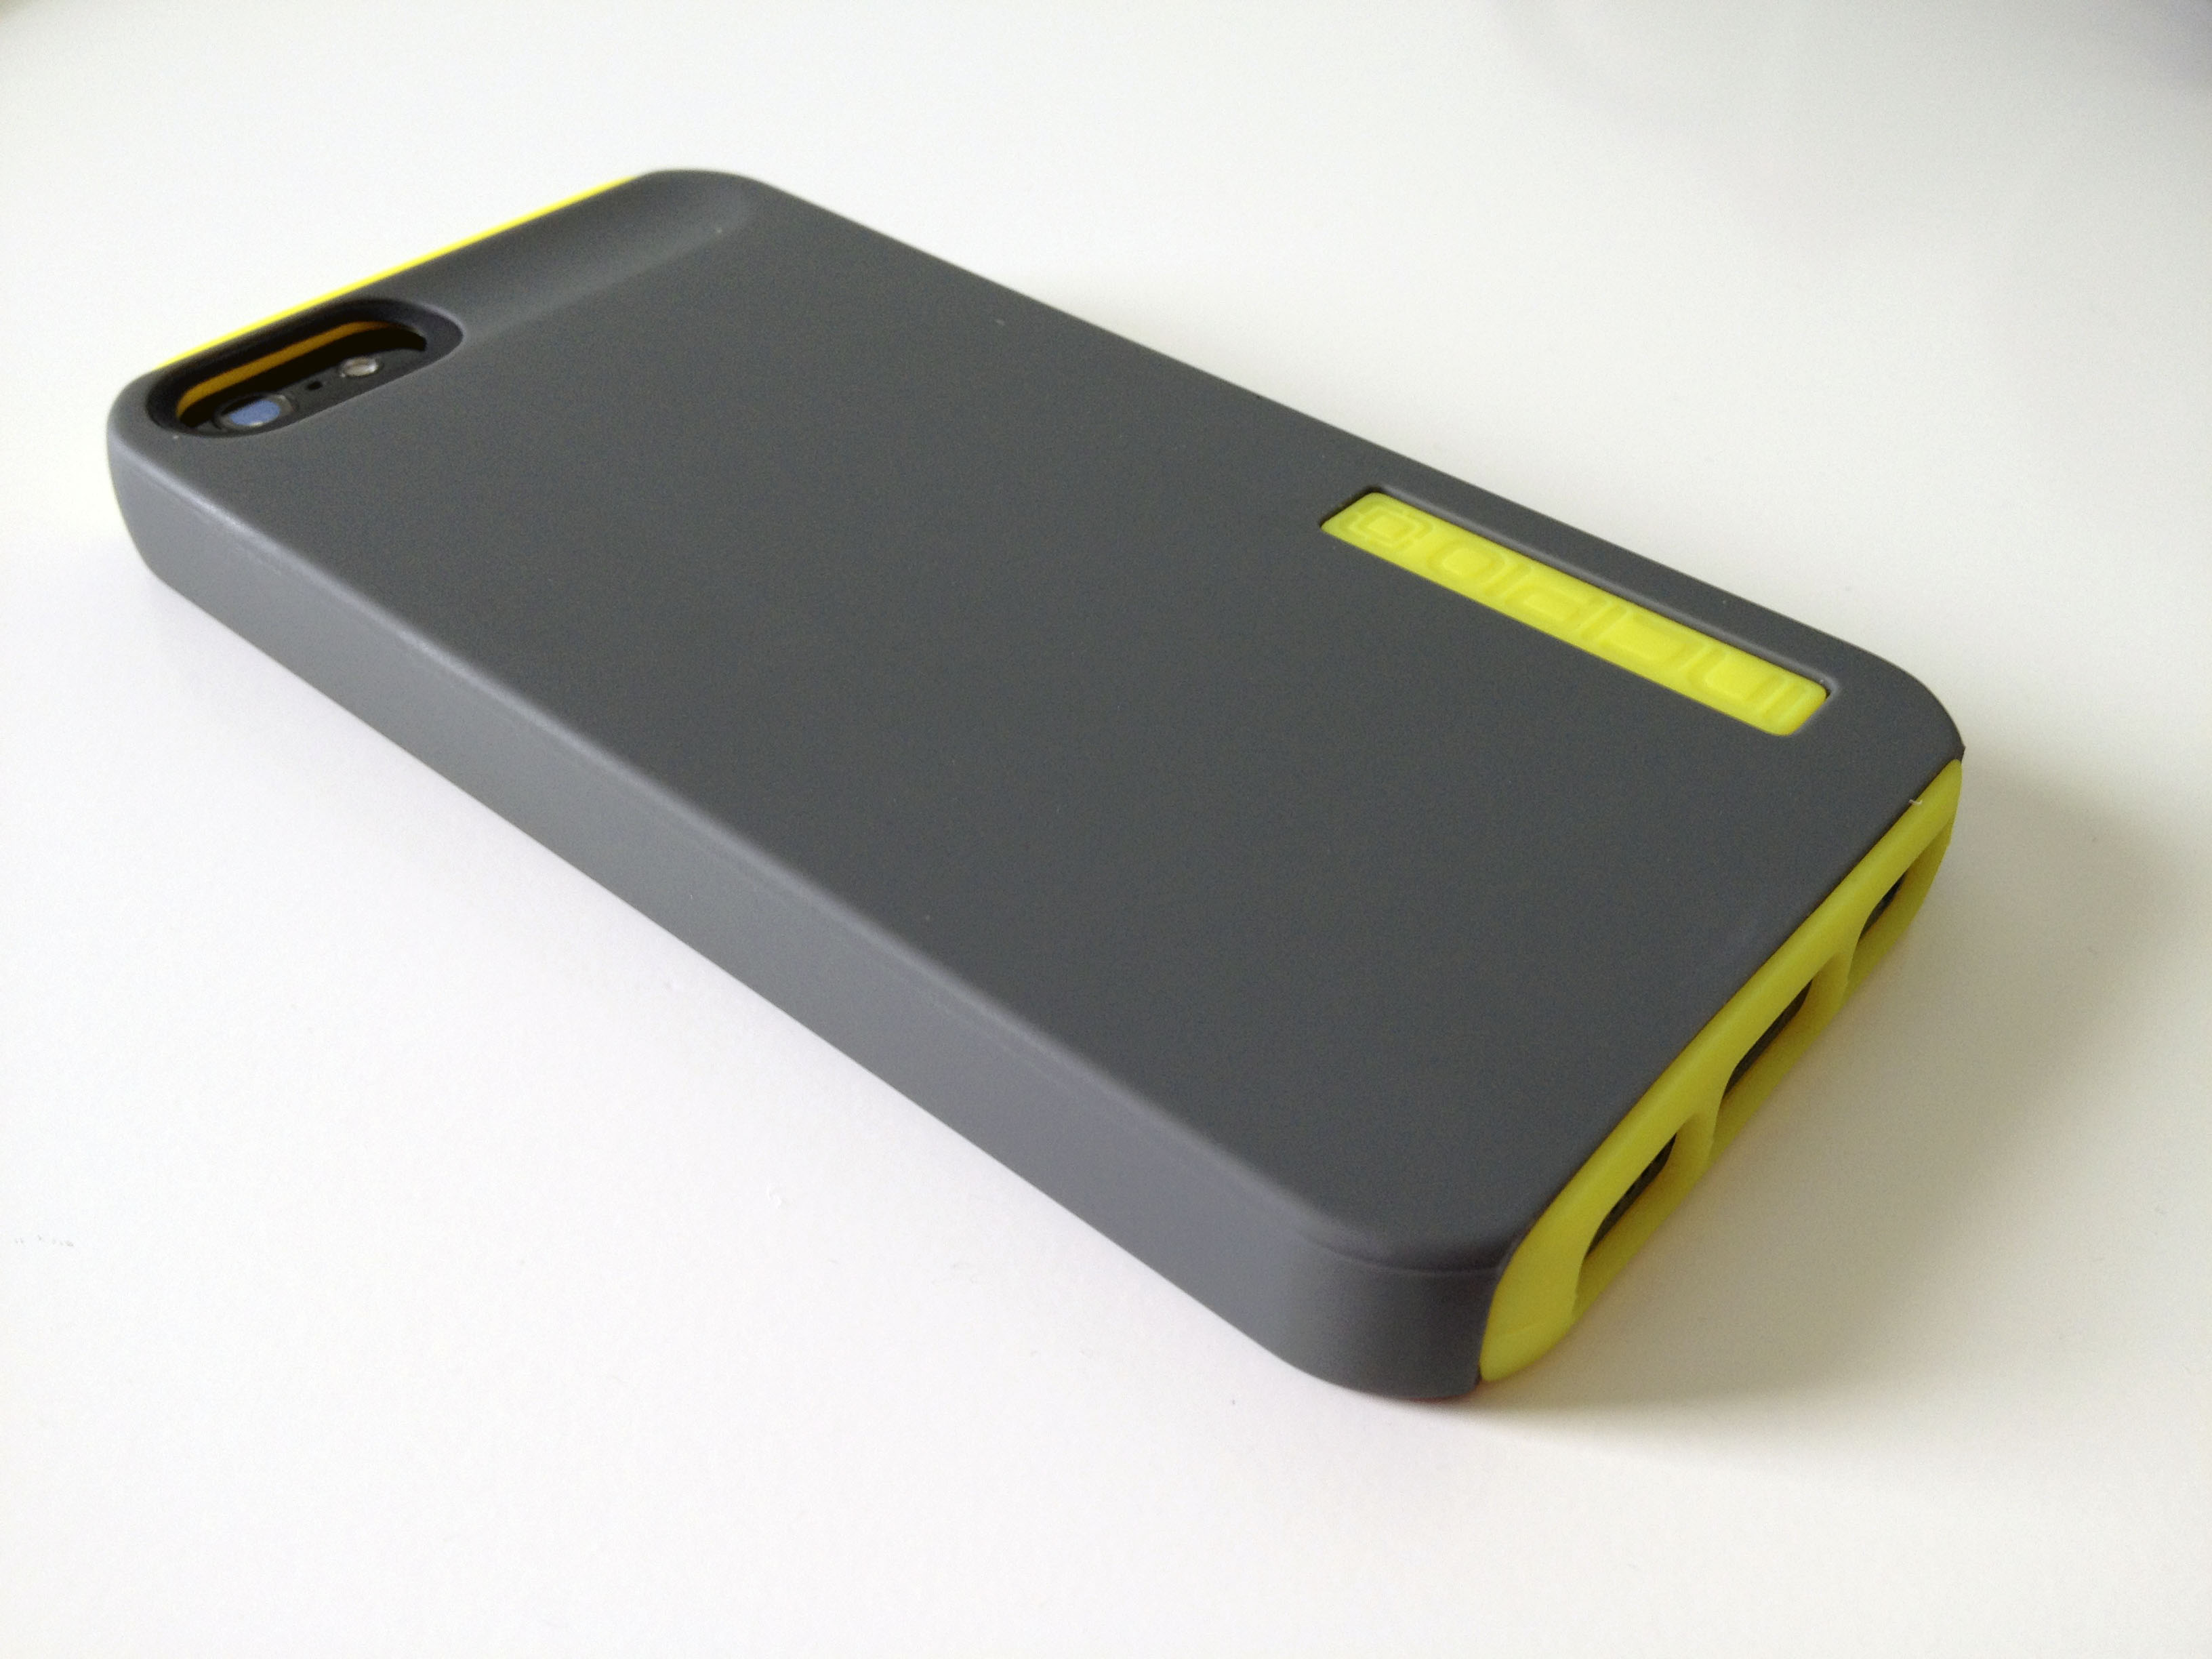 Incipio DualPro iPhone 5 case - 5